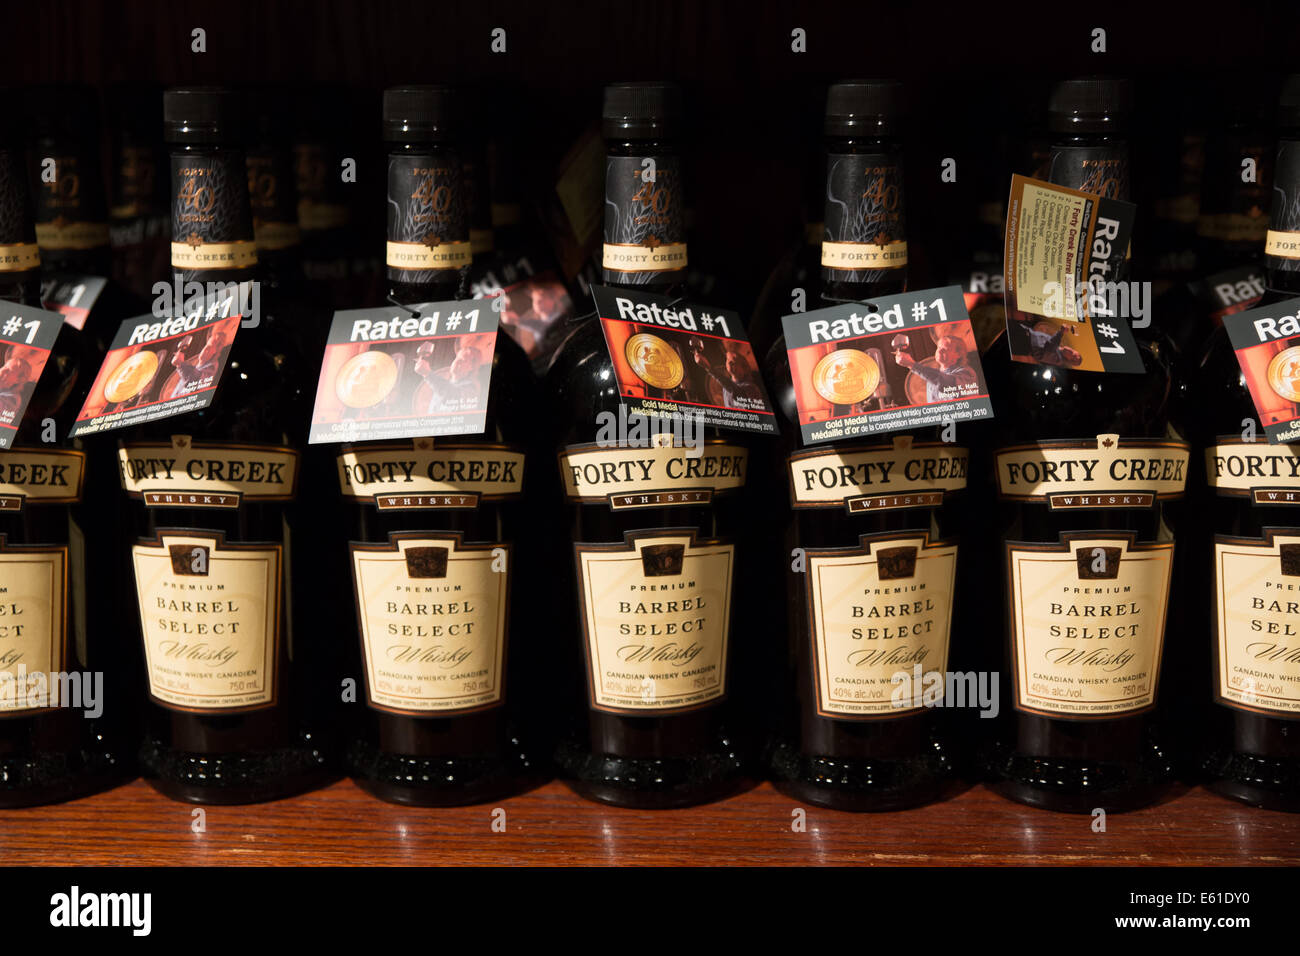 forty creek whiskey bottle shelves Stock Photo